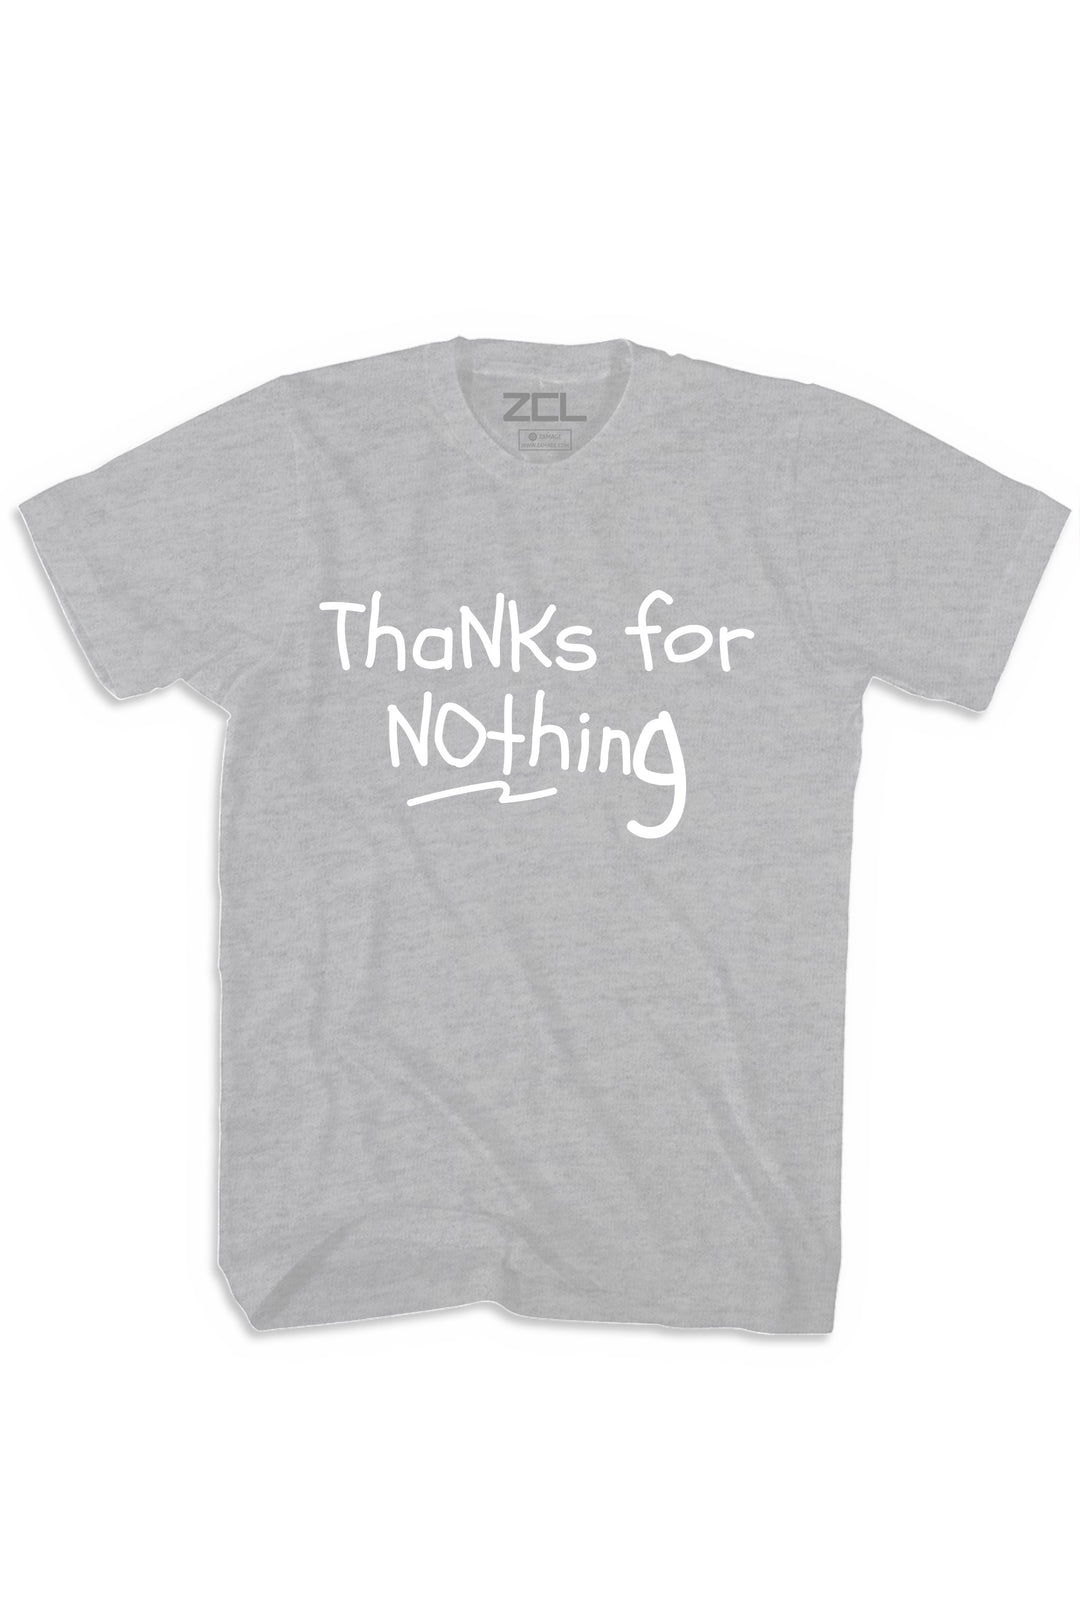 Thanks For Nothing Tee (White Logo) - Zamage